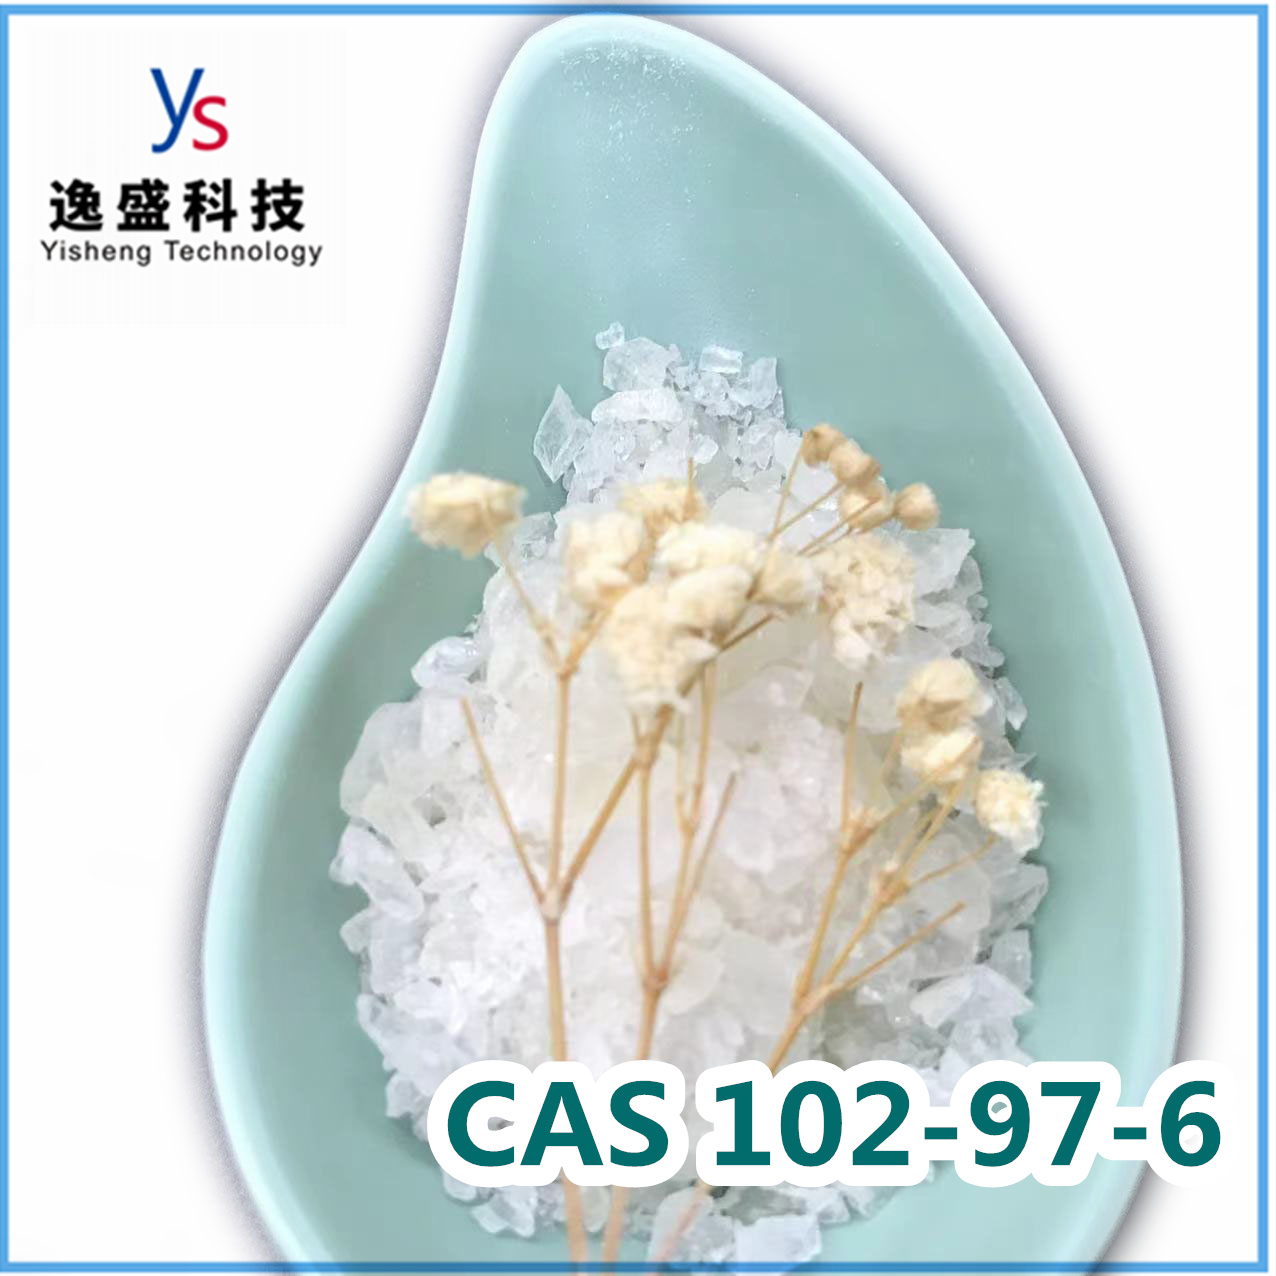  Cas 102-97-6 Benzylisopropylamine Poeder van topkwaliteit